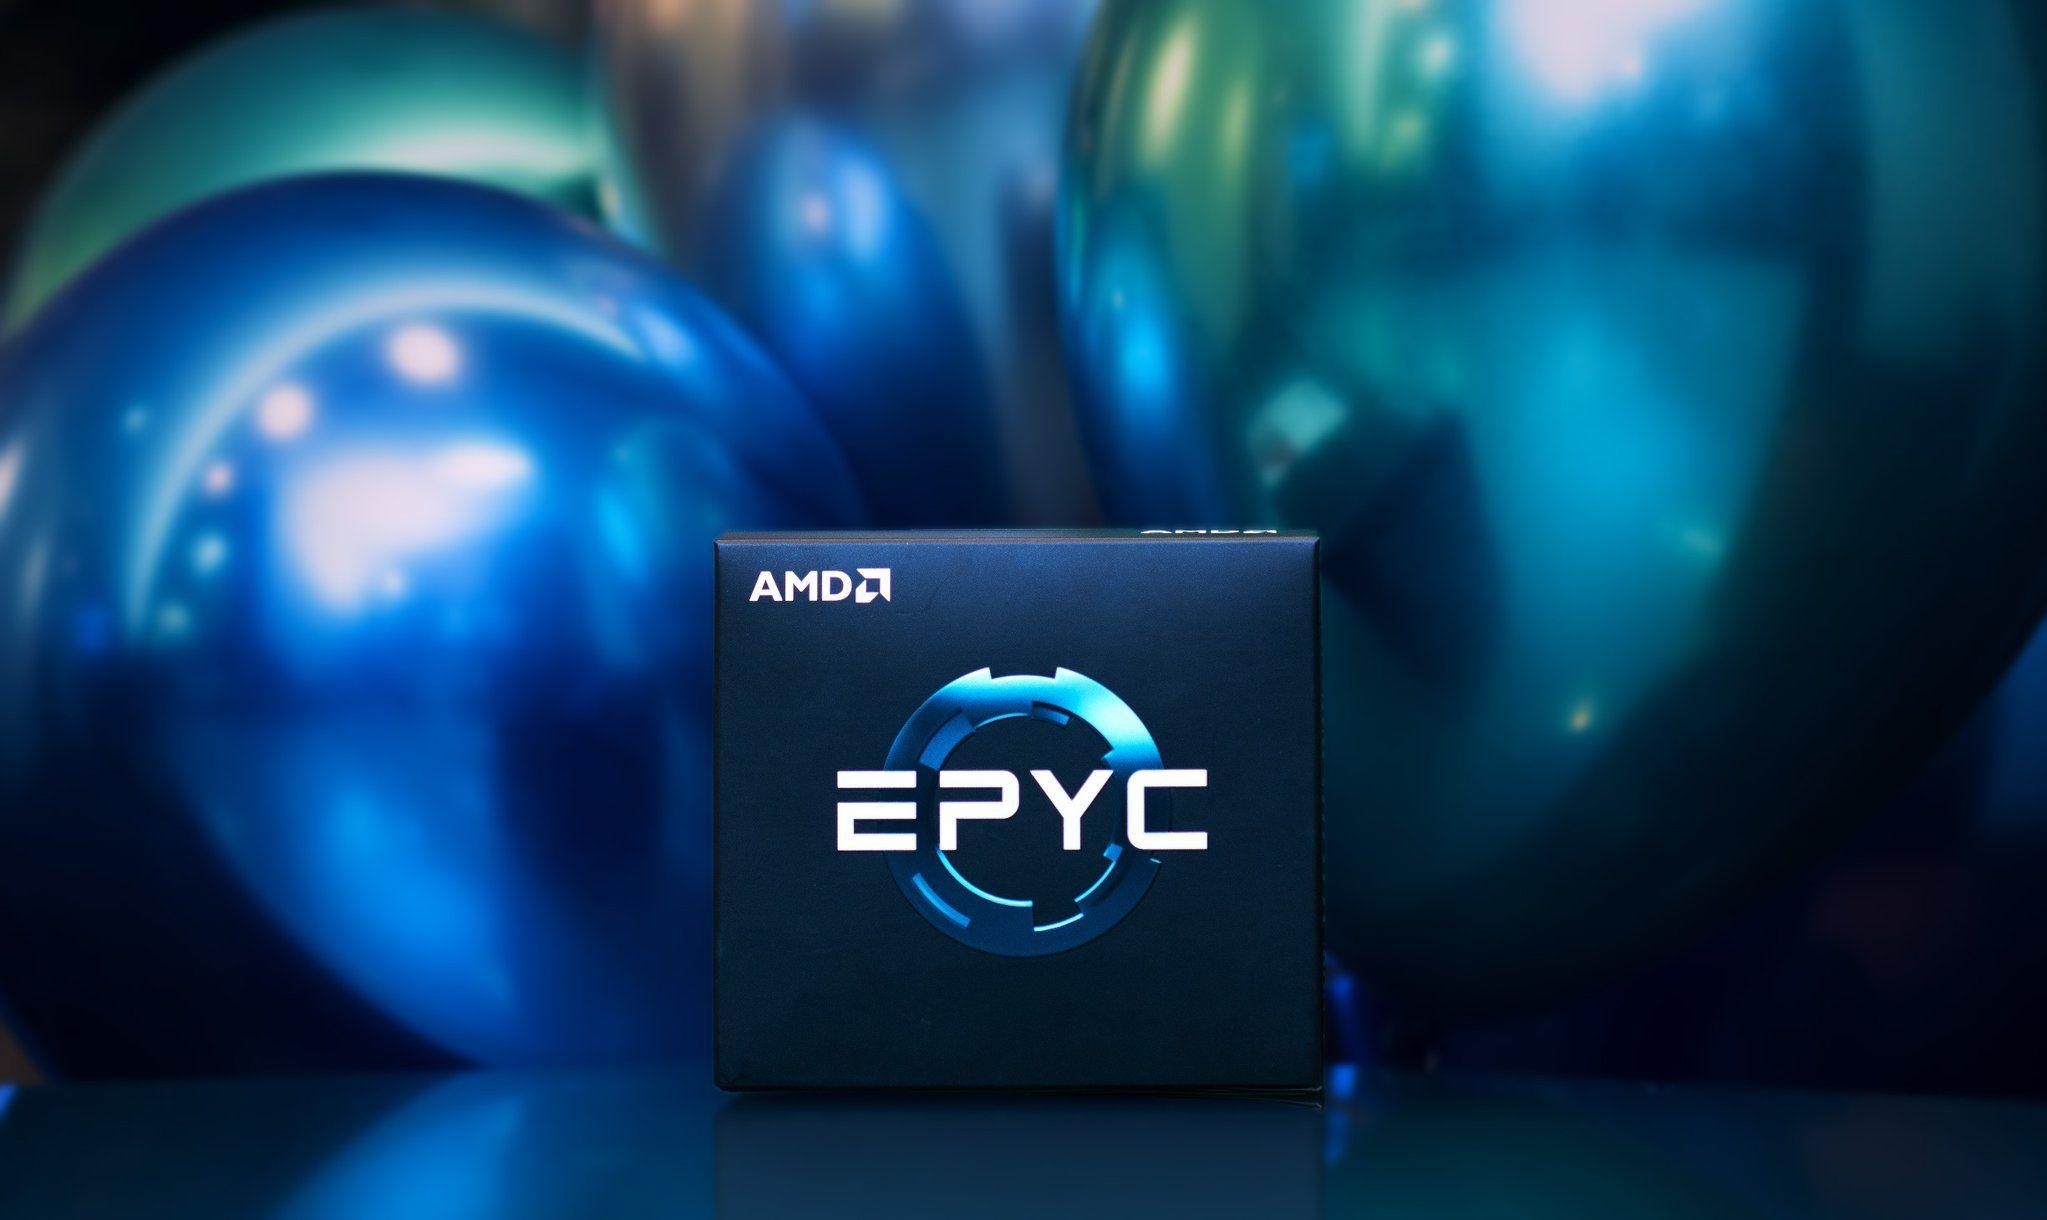 AMD Epyc Logo - AMD Stock Soars After Amazon Announced As Major Partner Using EPYC Chips